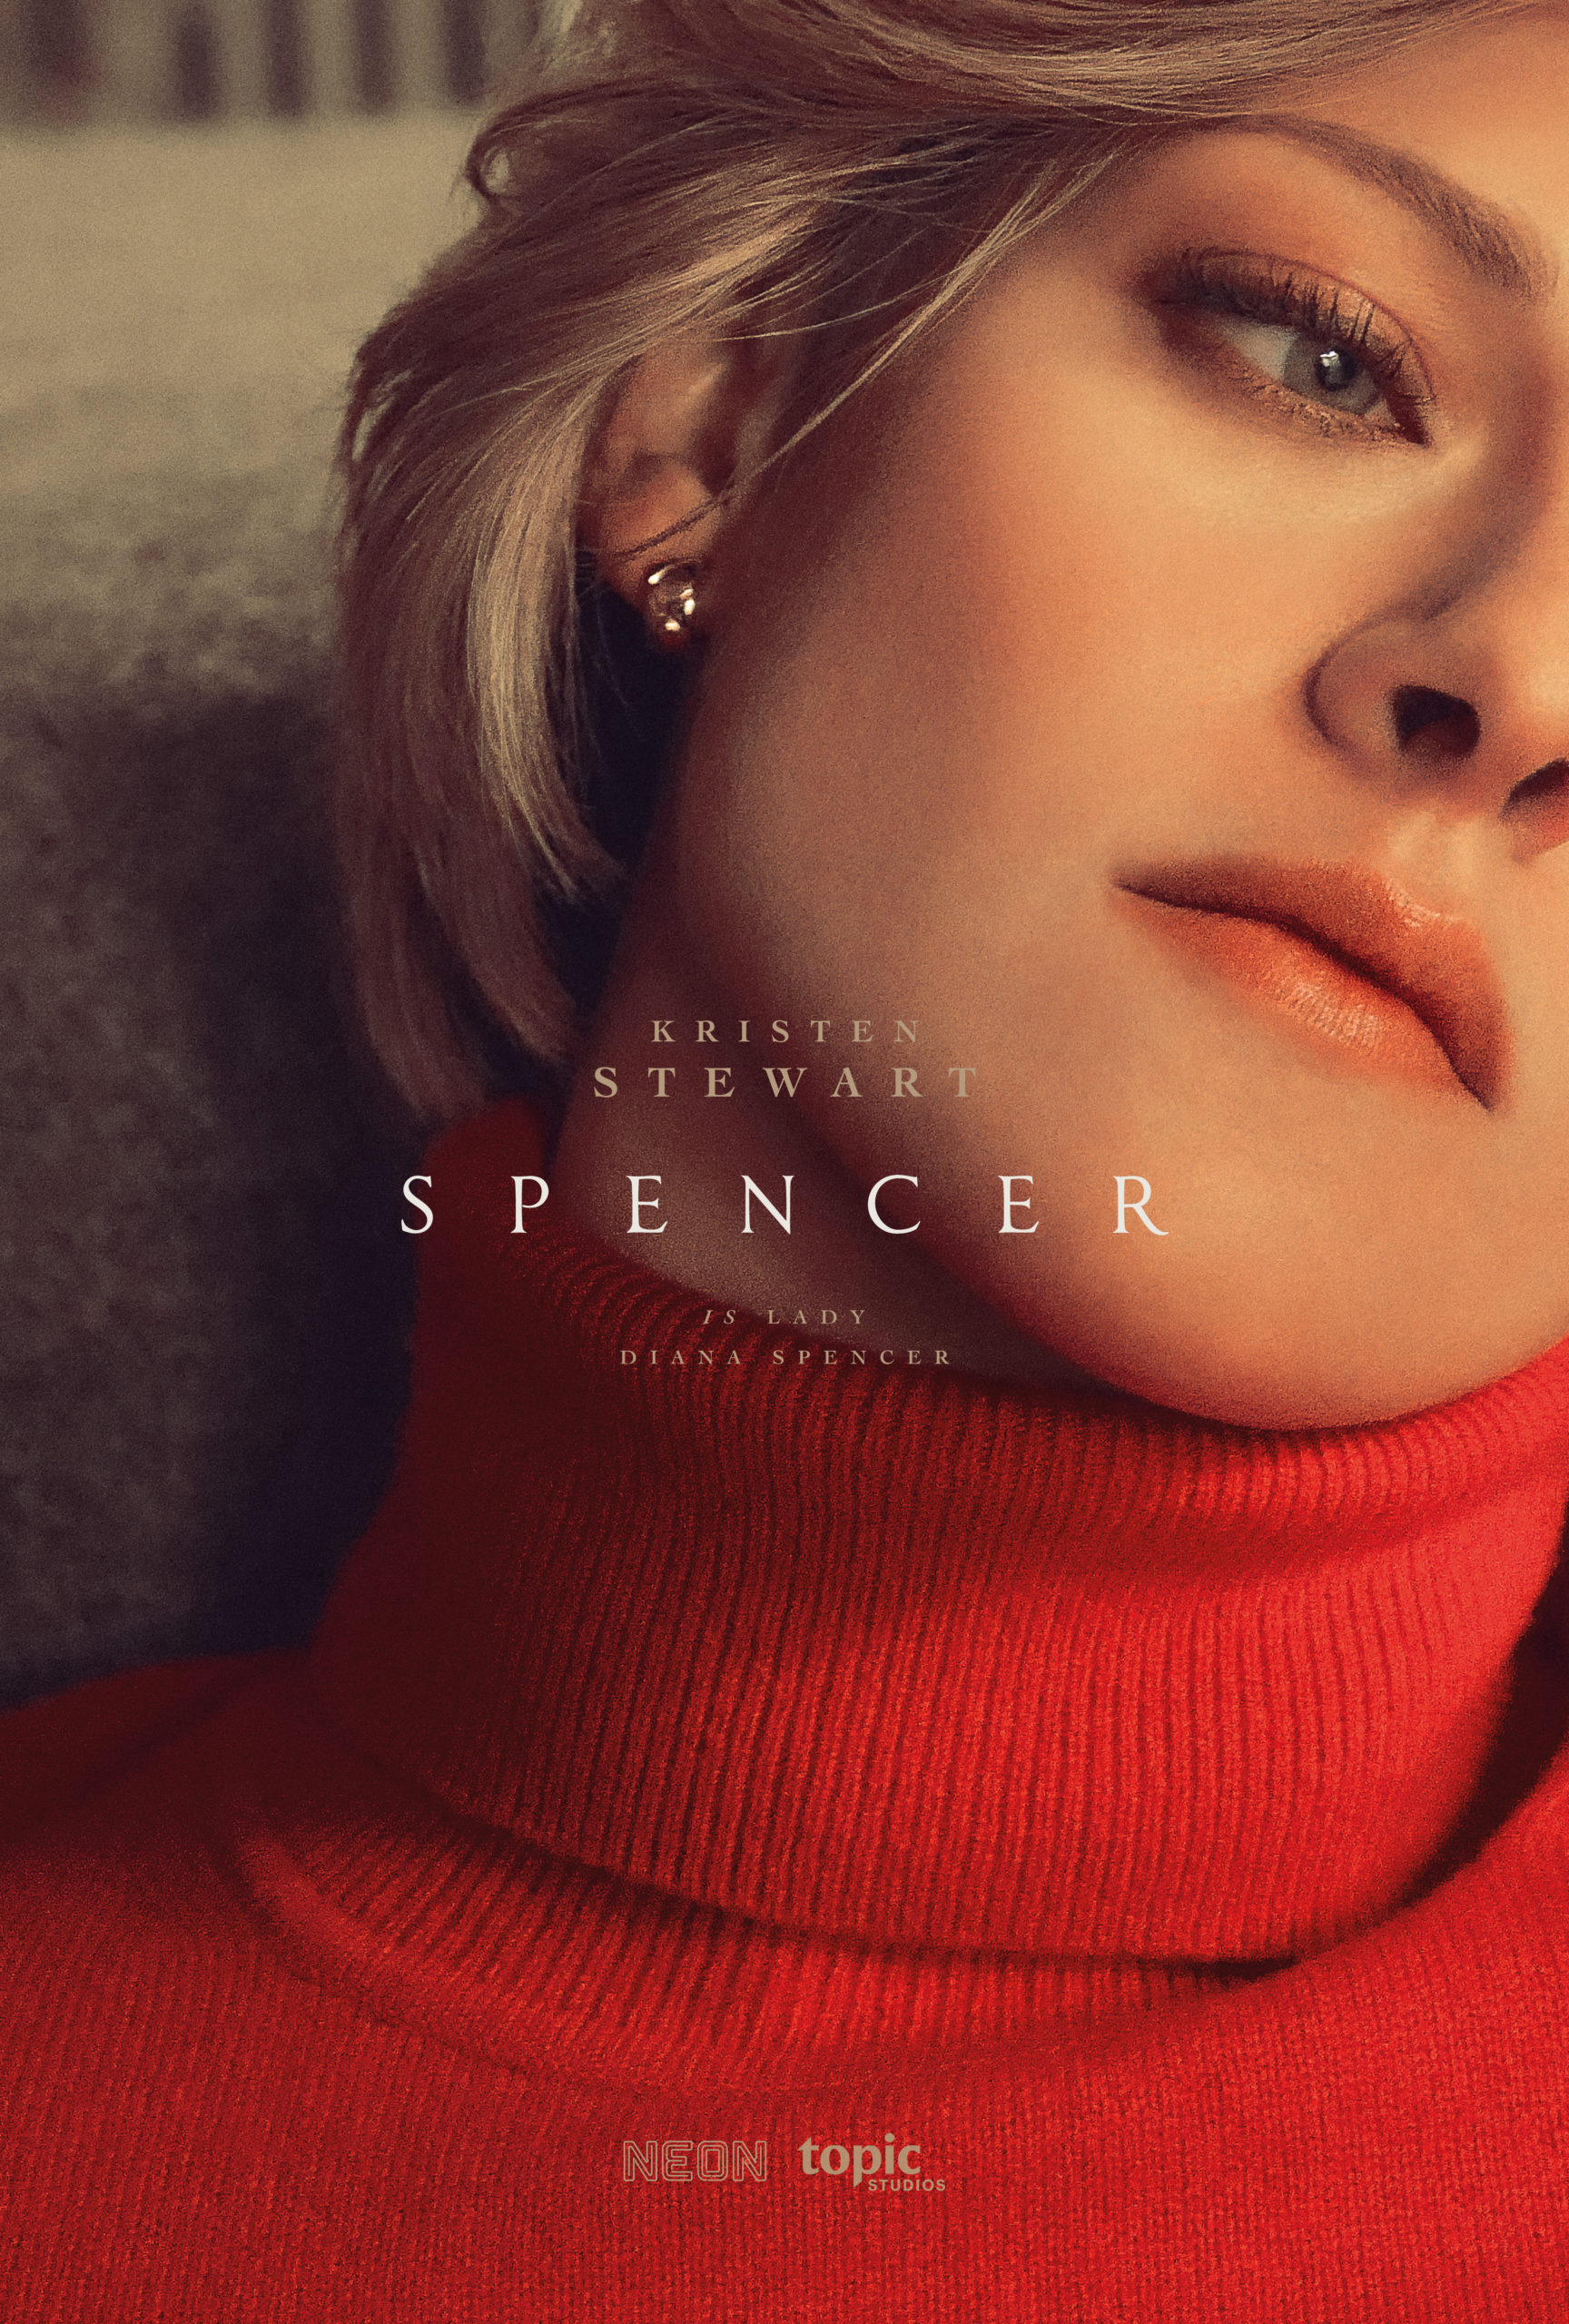 Spencer poster with Kristen Stewart